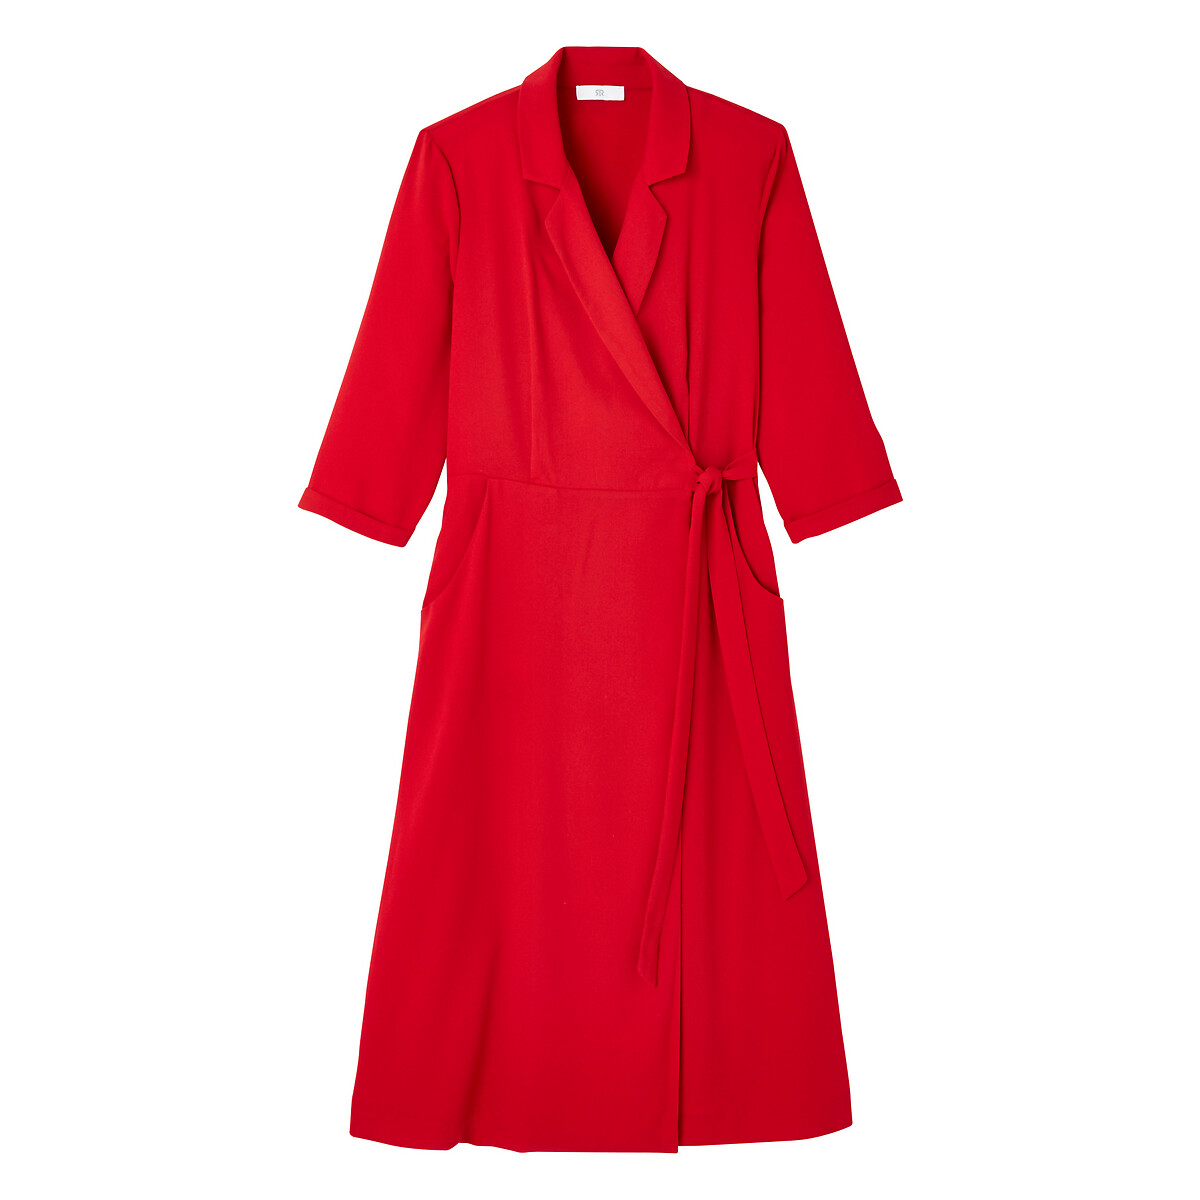 Платье La Redoute С воротником и рукавами 46 (FR) - 52 (RUS) красный, размер 46 (FR) - 52 (RUS) С воротником и рукавами 46 (FR) - 52 (RUS) красный - фото 5